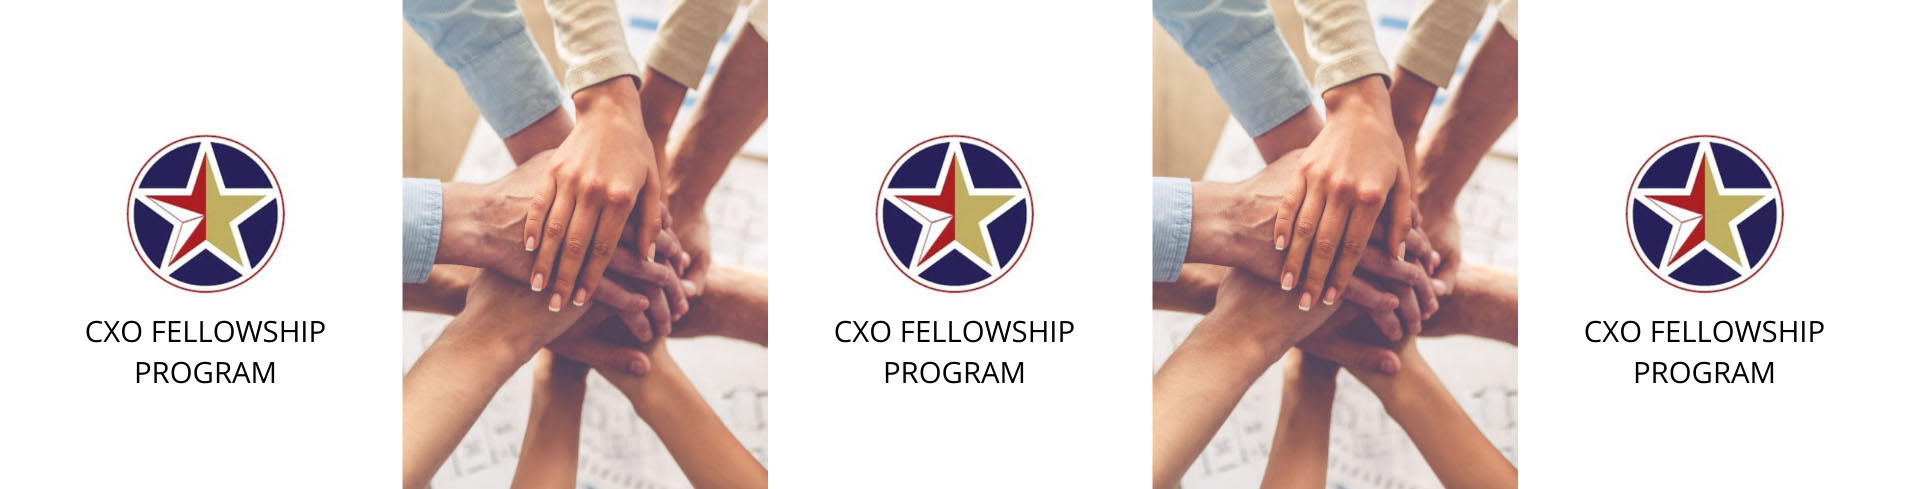 CXO Fellowship Program logo.